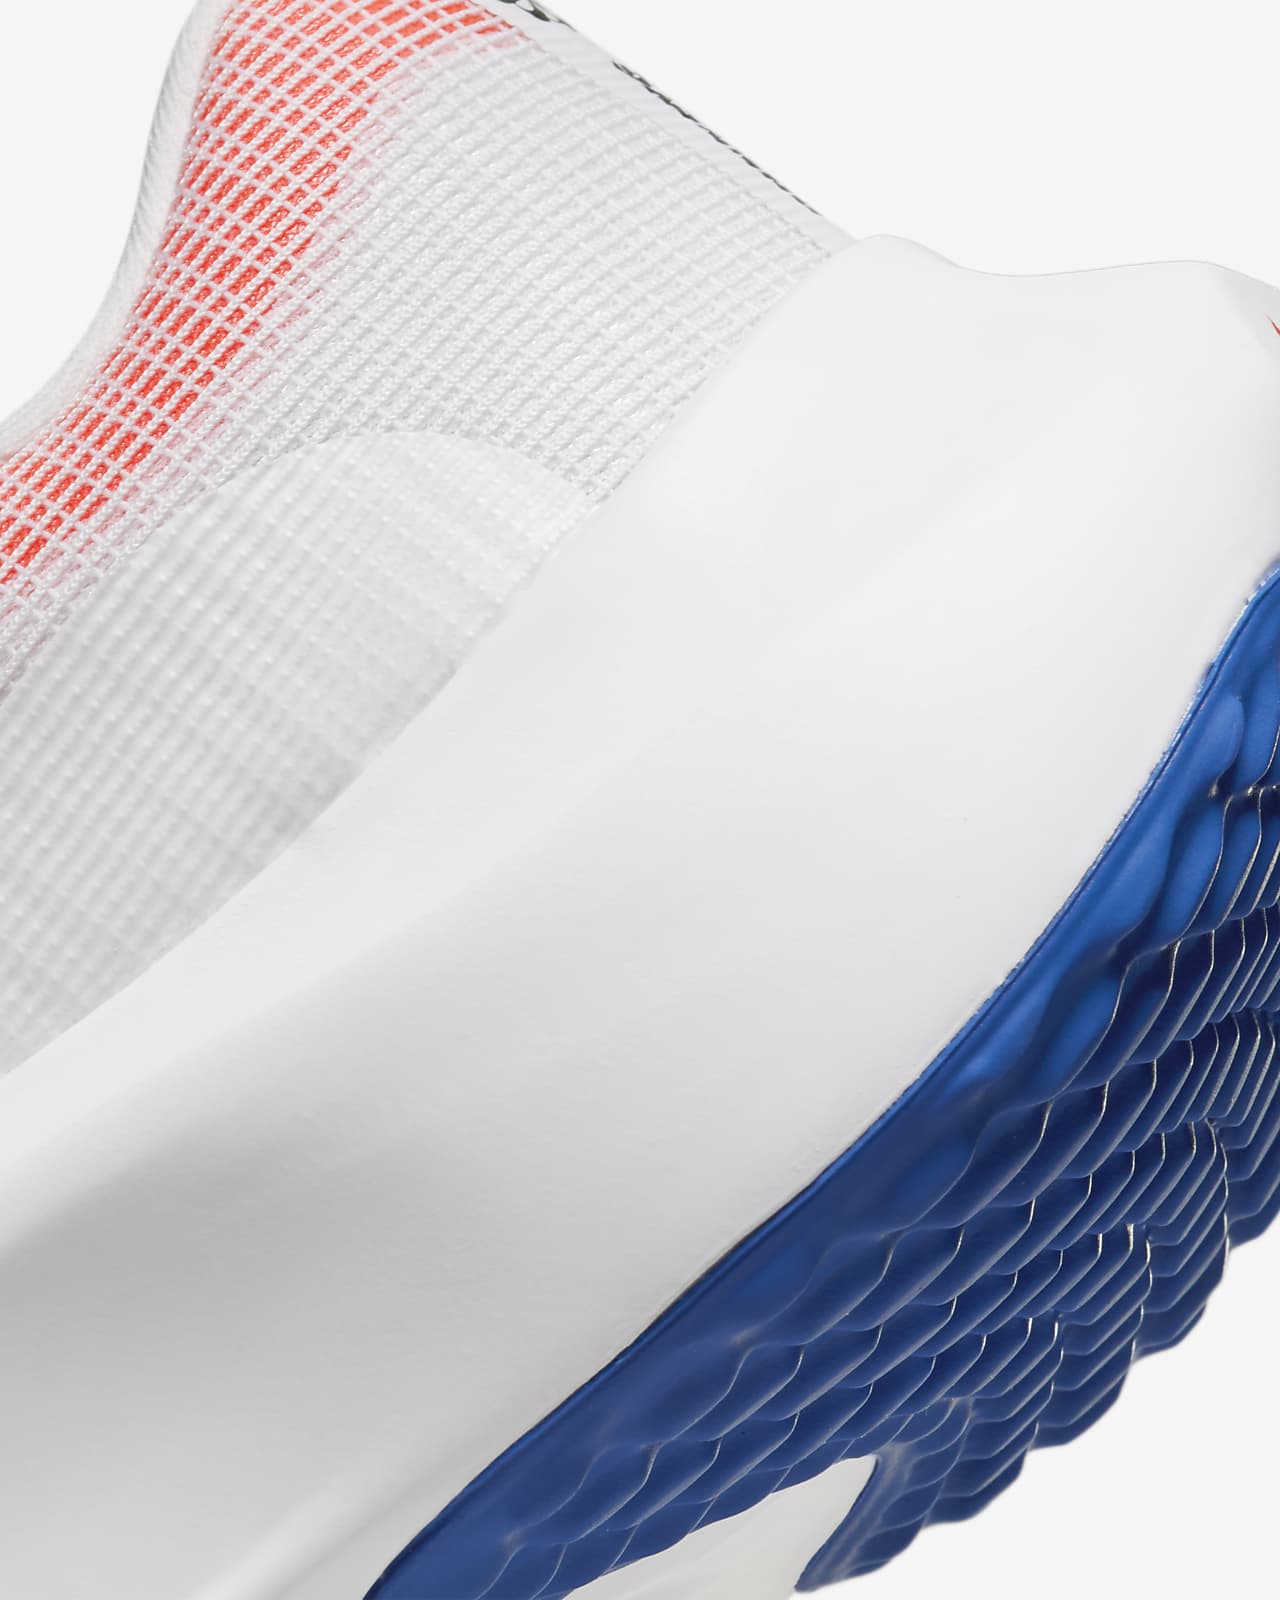 Nike Zoom Fly 5 Premium Zapatillas de para - ES